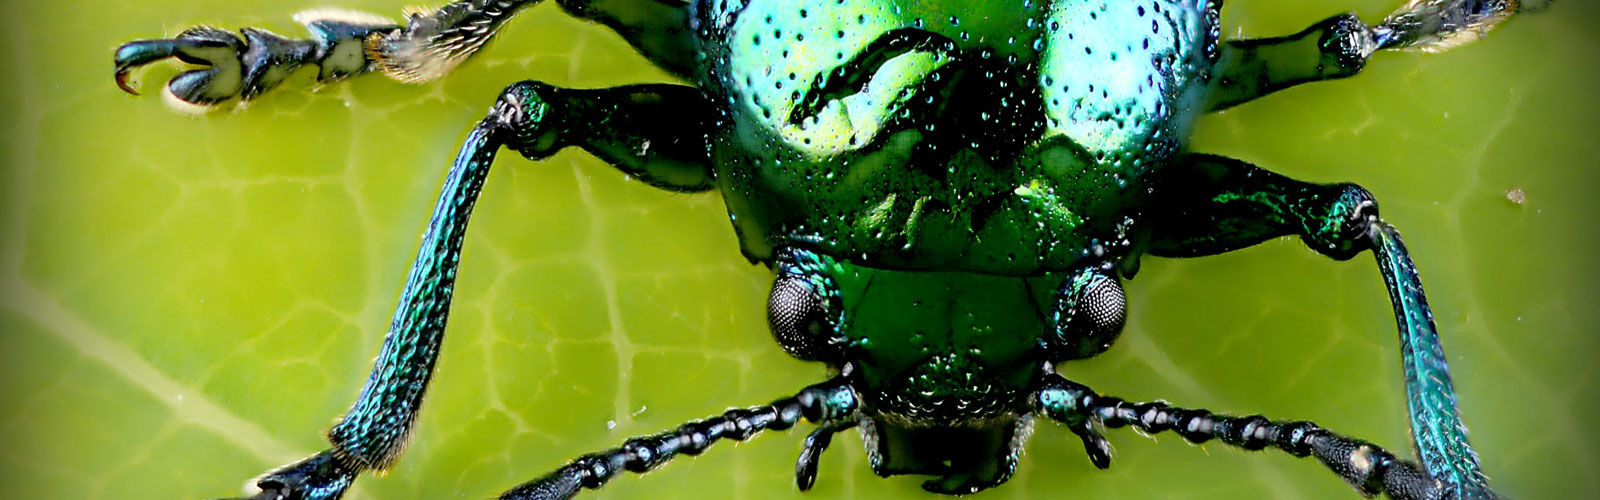 Bild von einem grünschimmernden Käfer auf einem Blatt